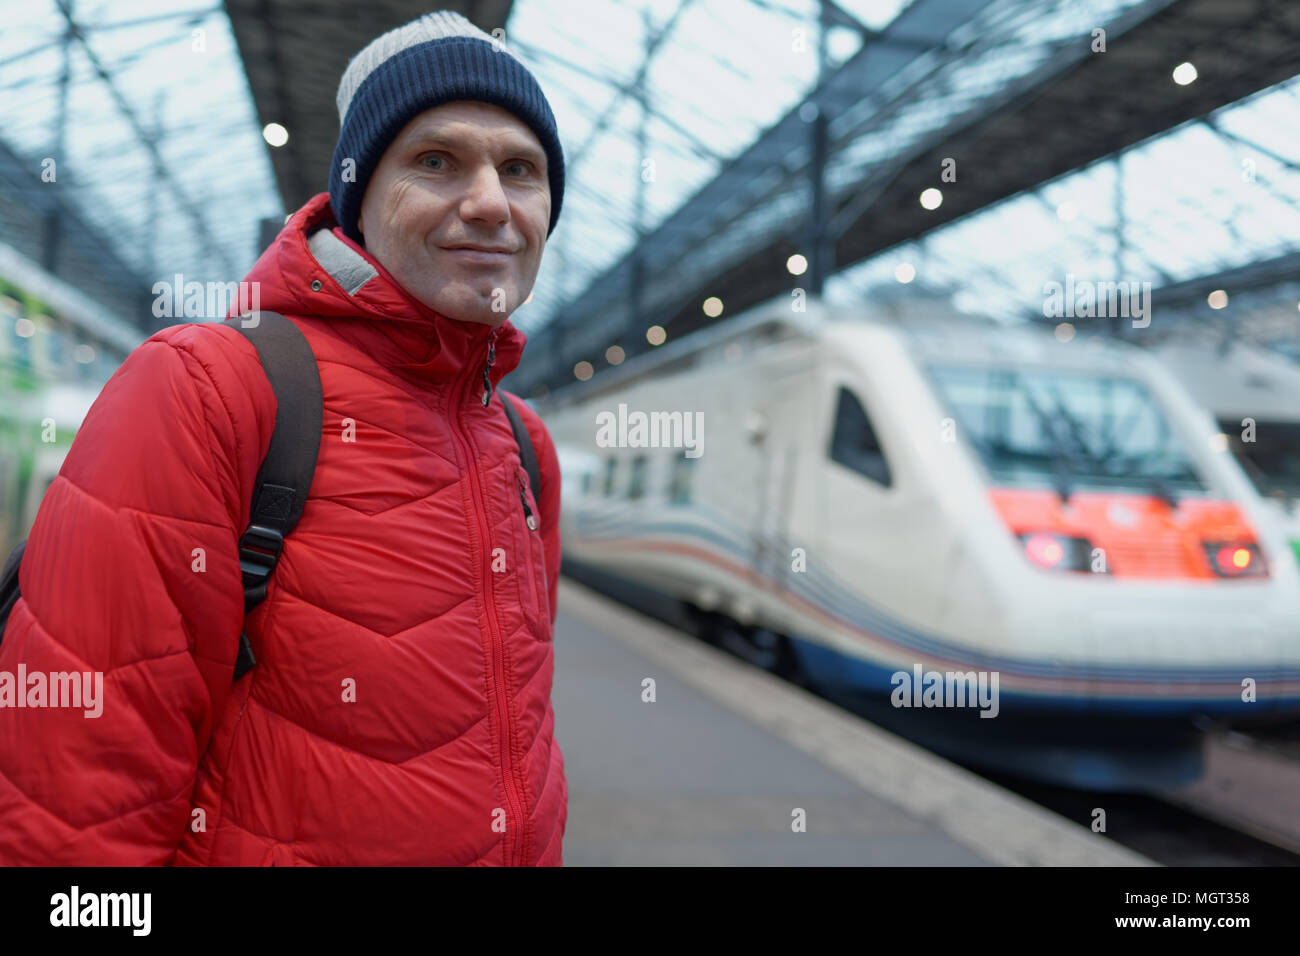 Man on a platform of Helsinki train station Stock Photo